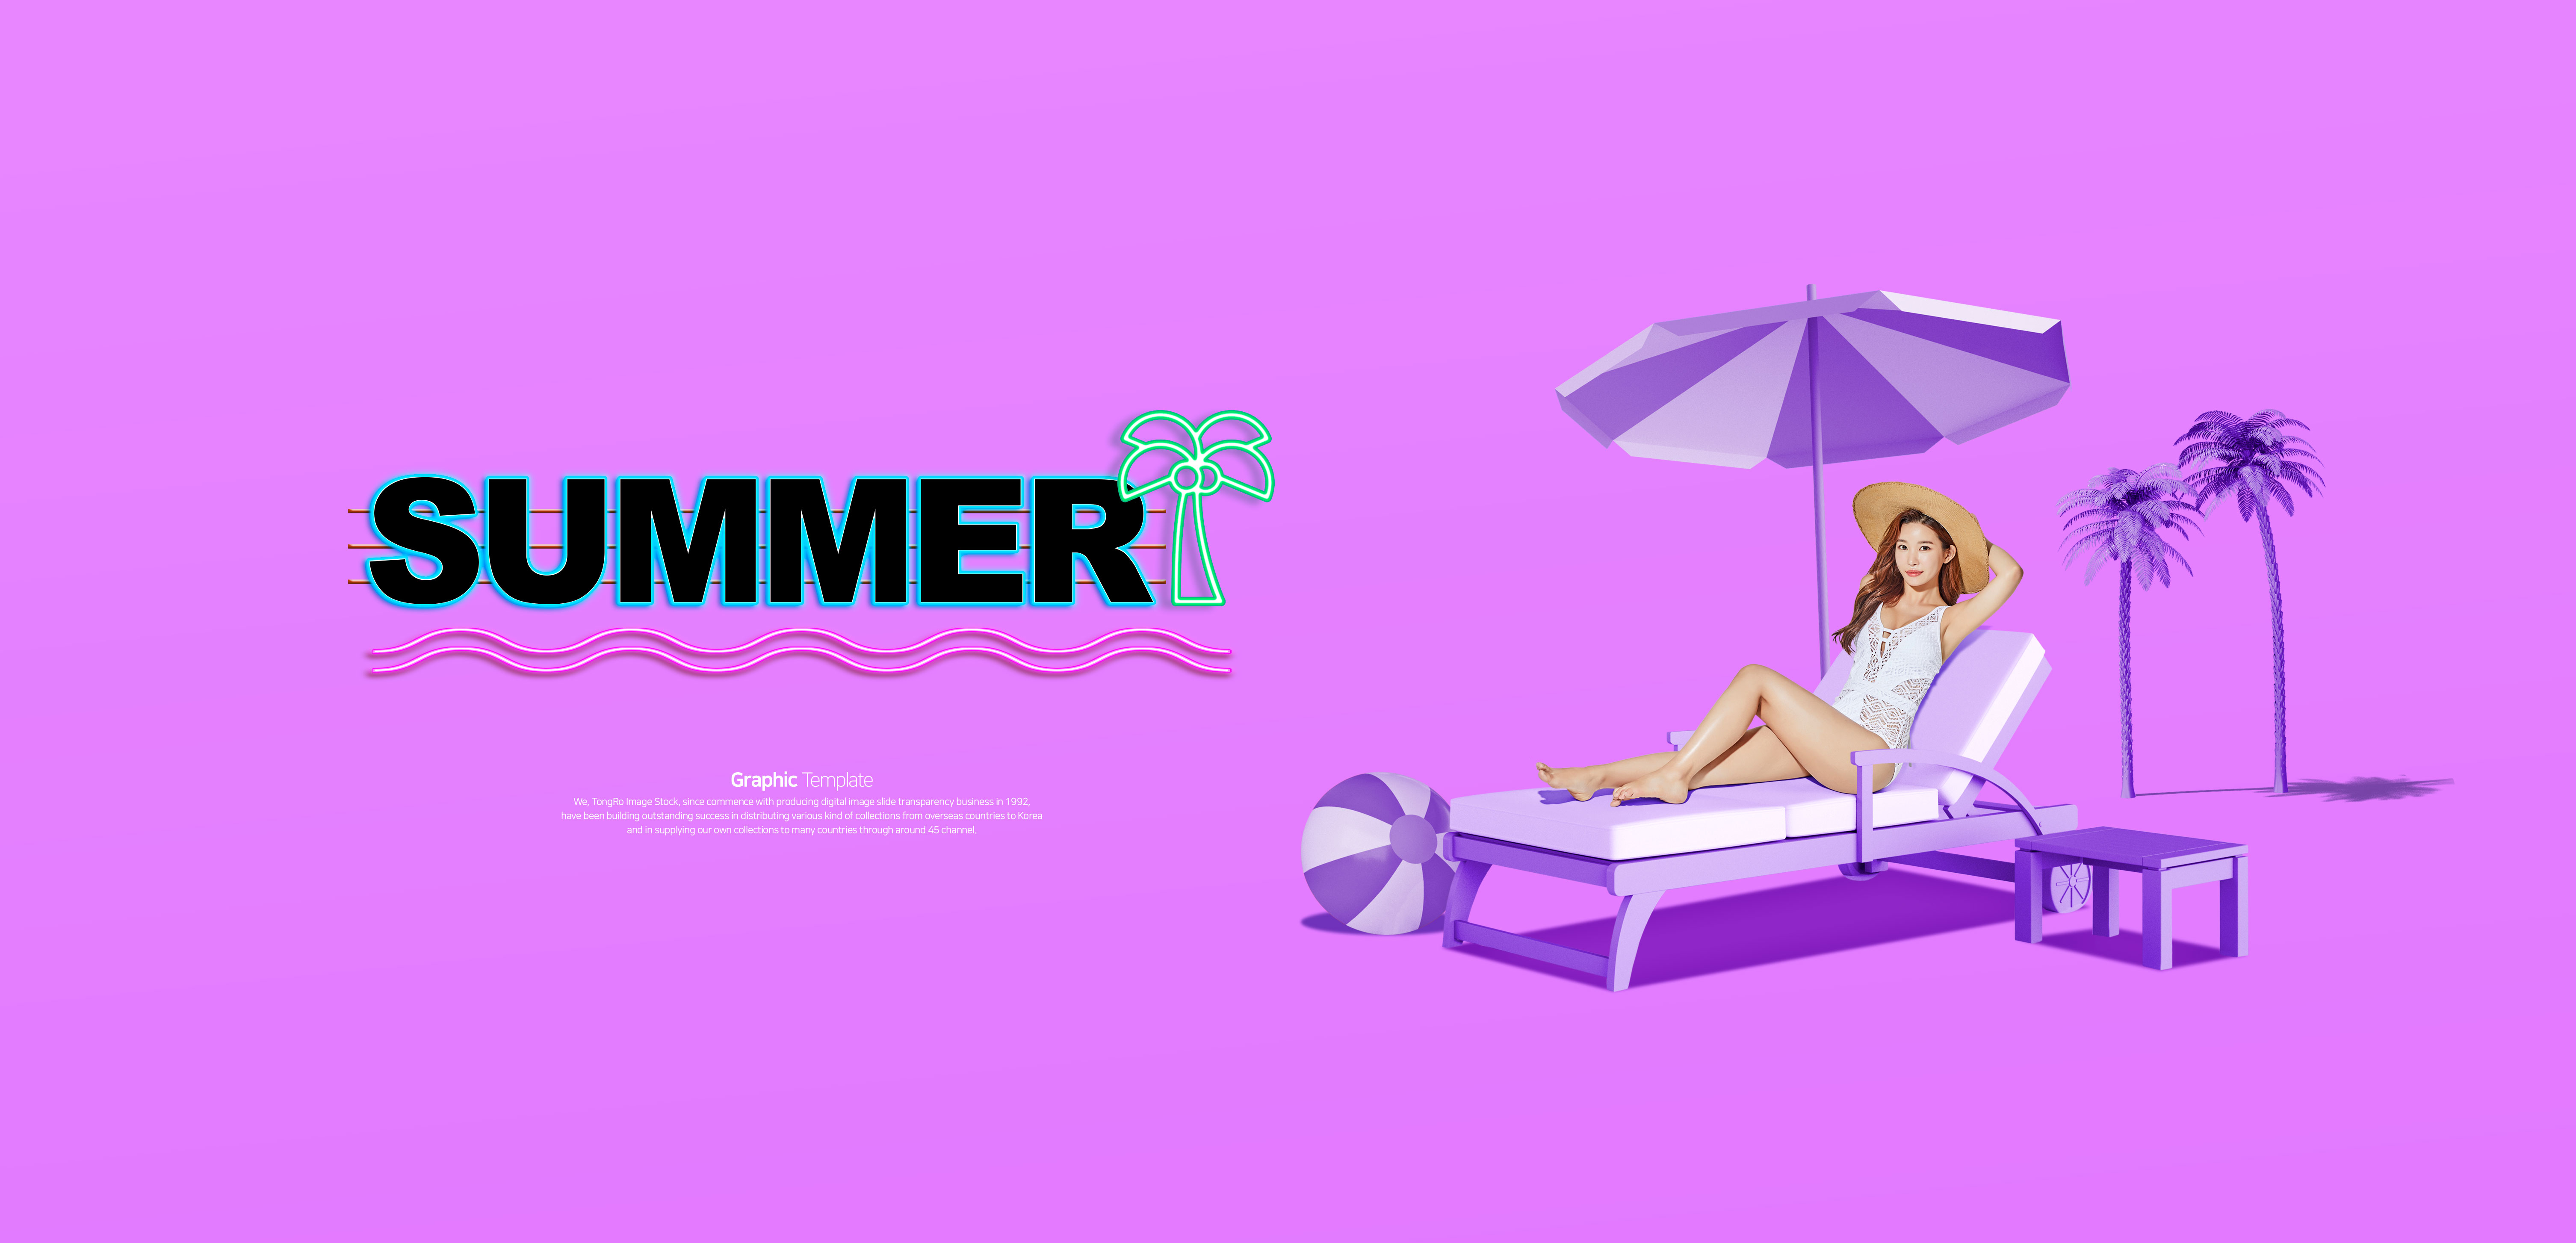 夏季暑假度假旅行活动促销广告Banner设计插图